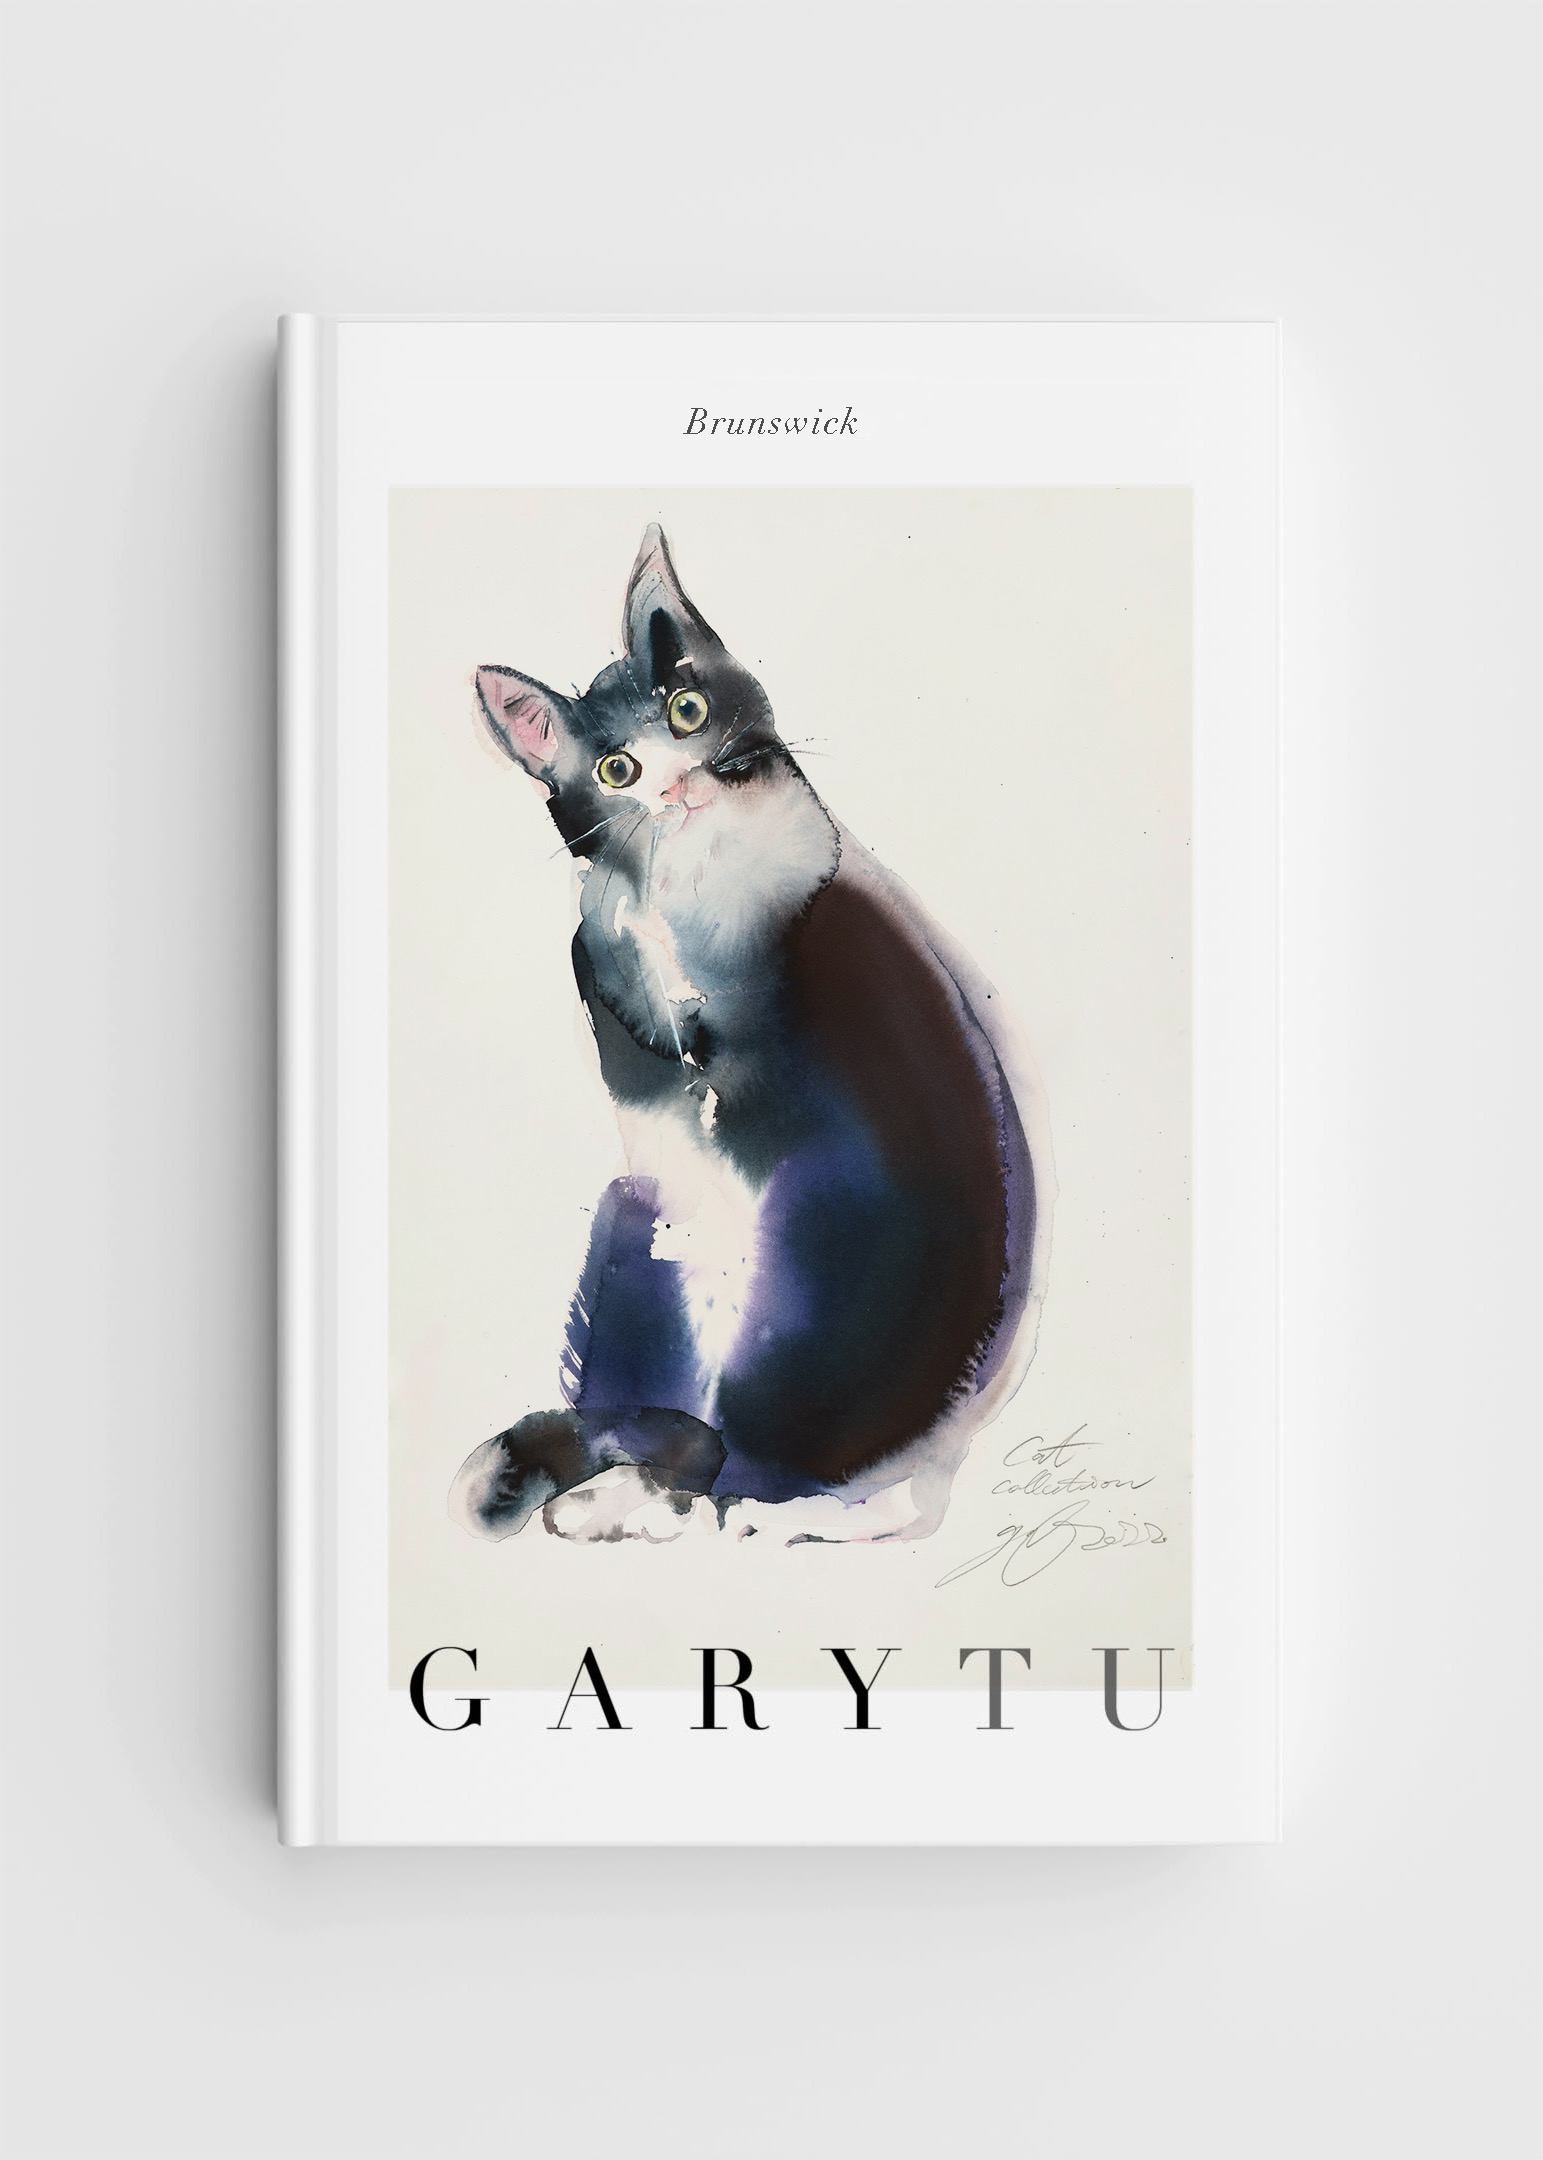  Gary Tu 時尚貓咪筆記本 